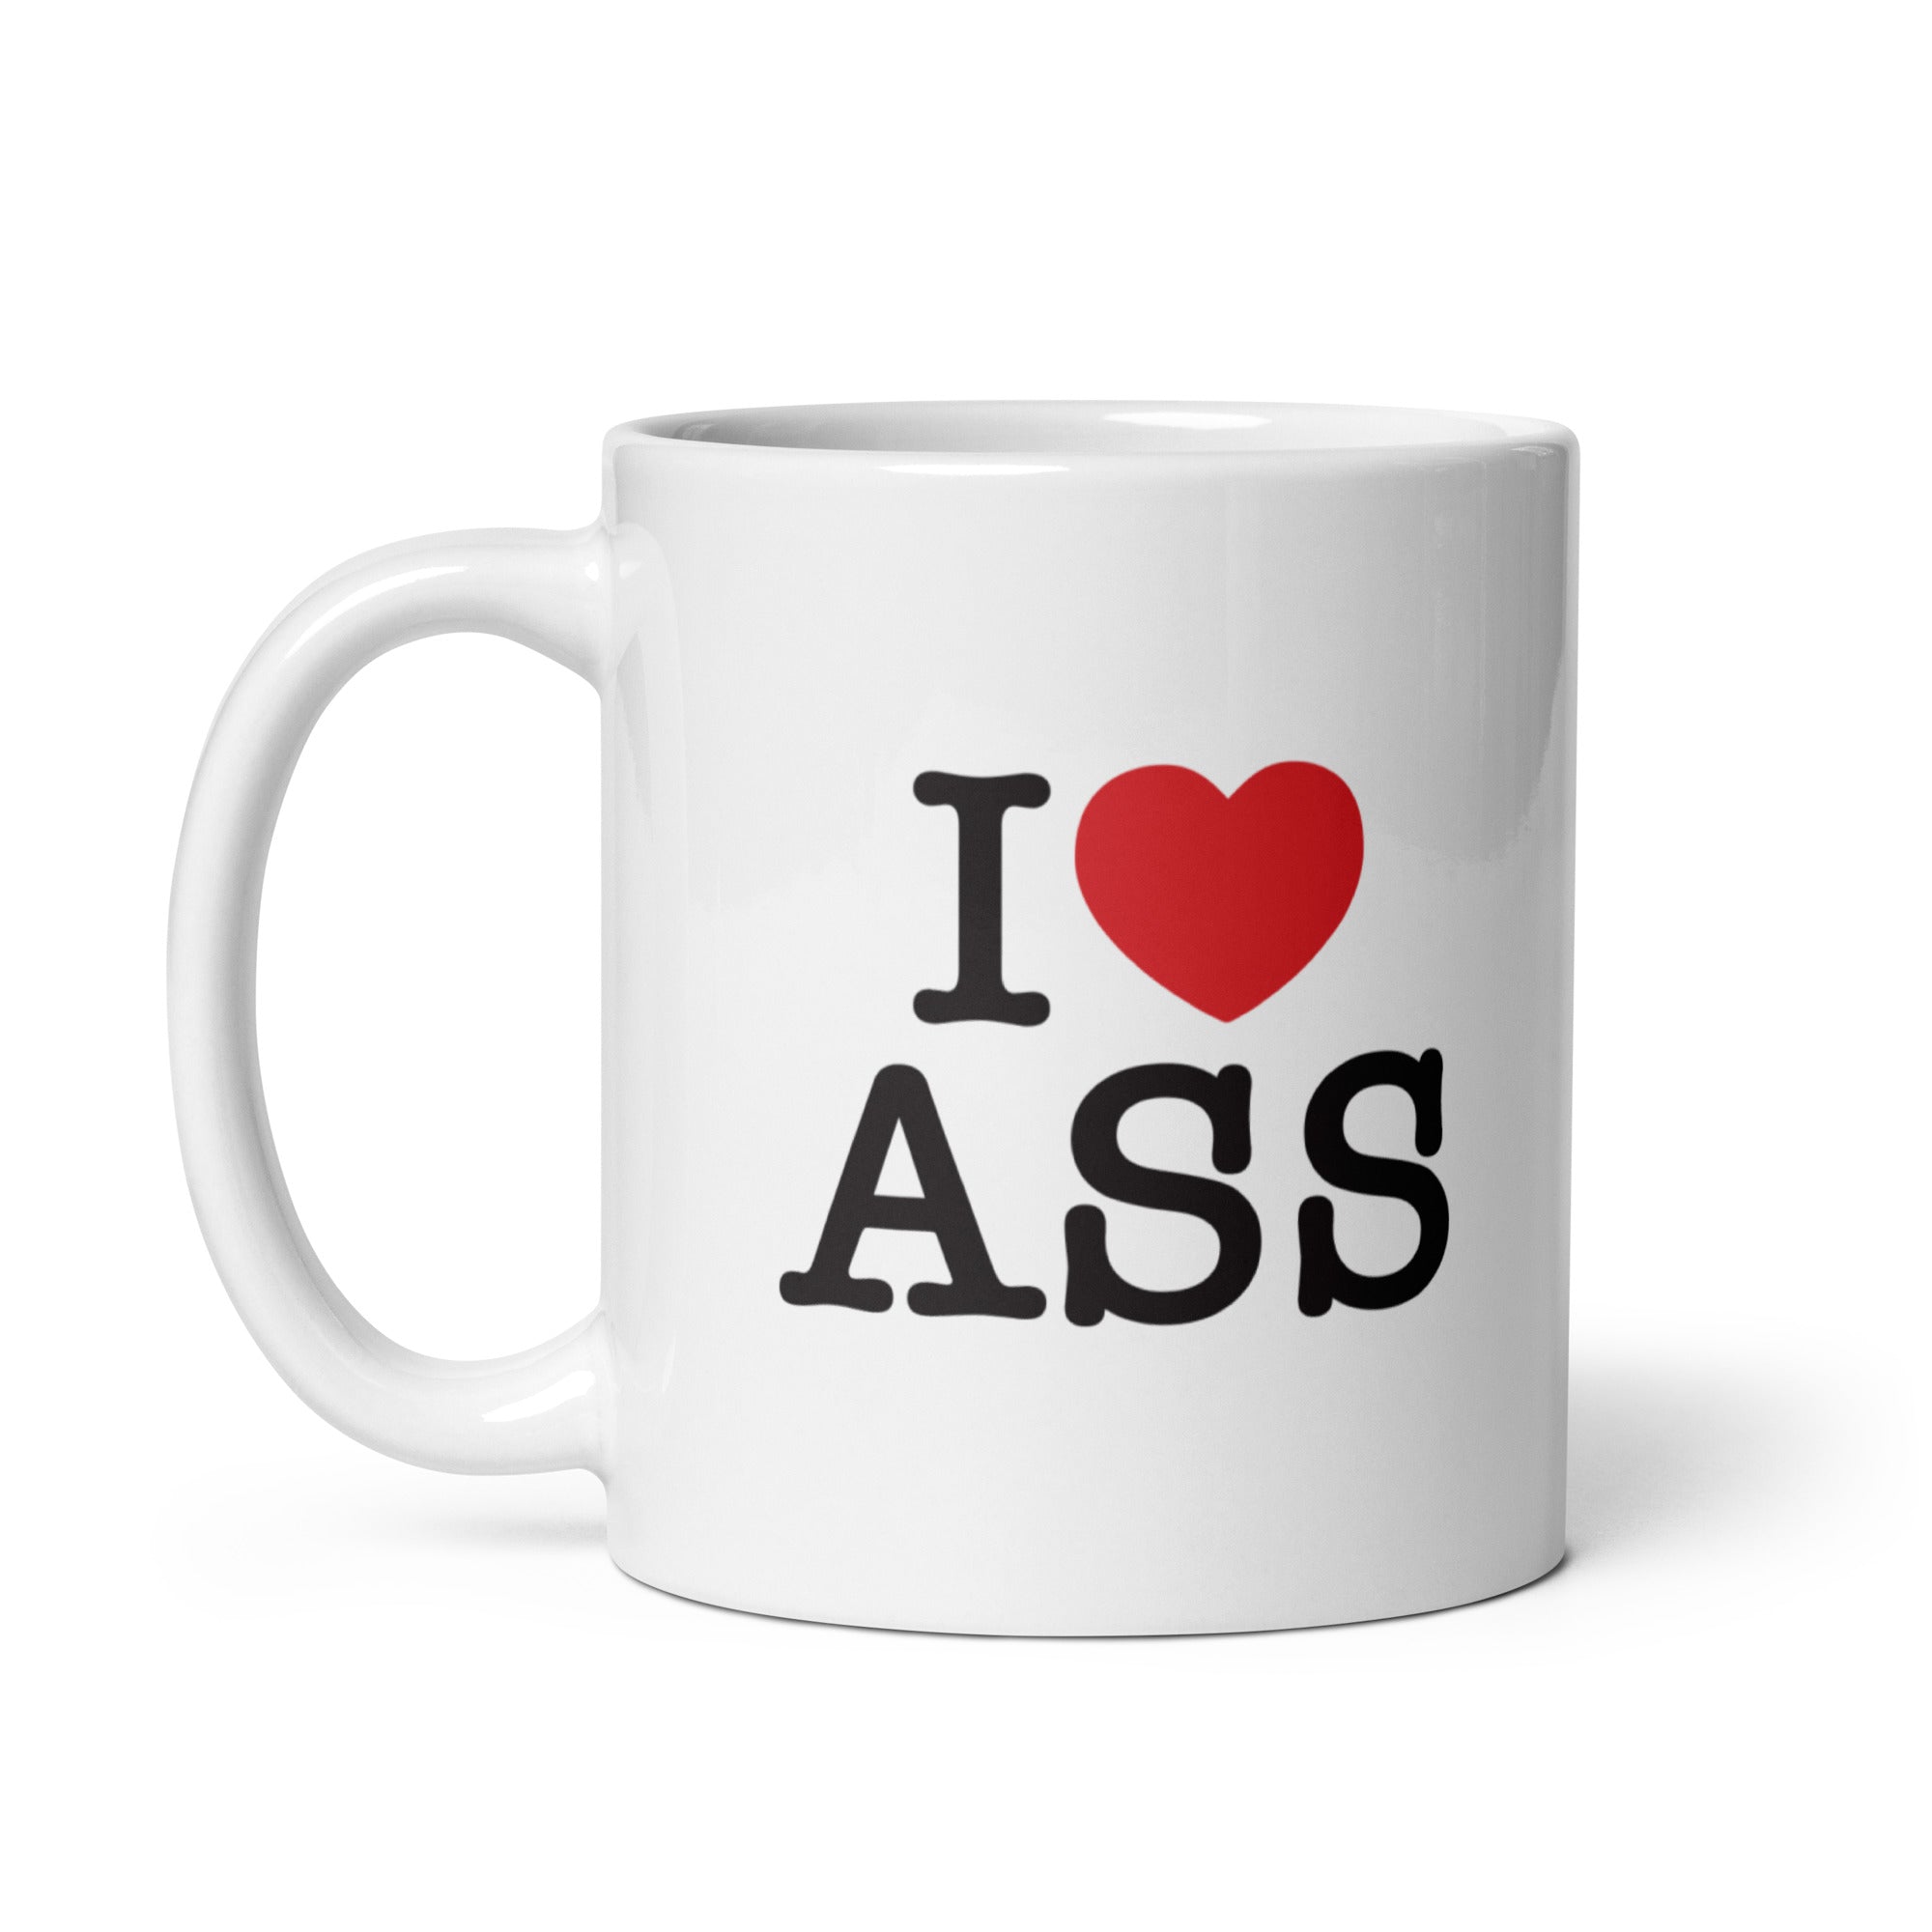 I Love Ass Mug